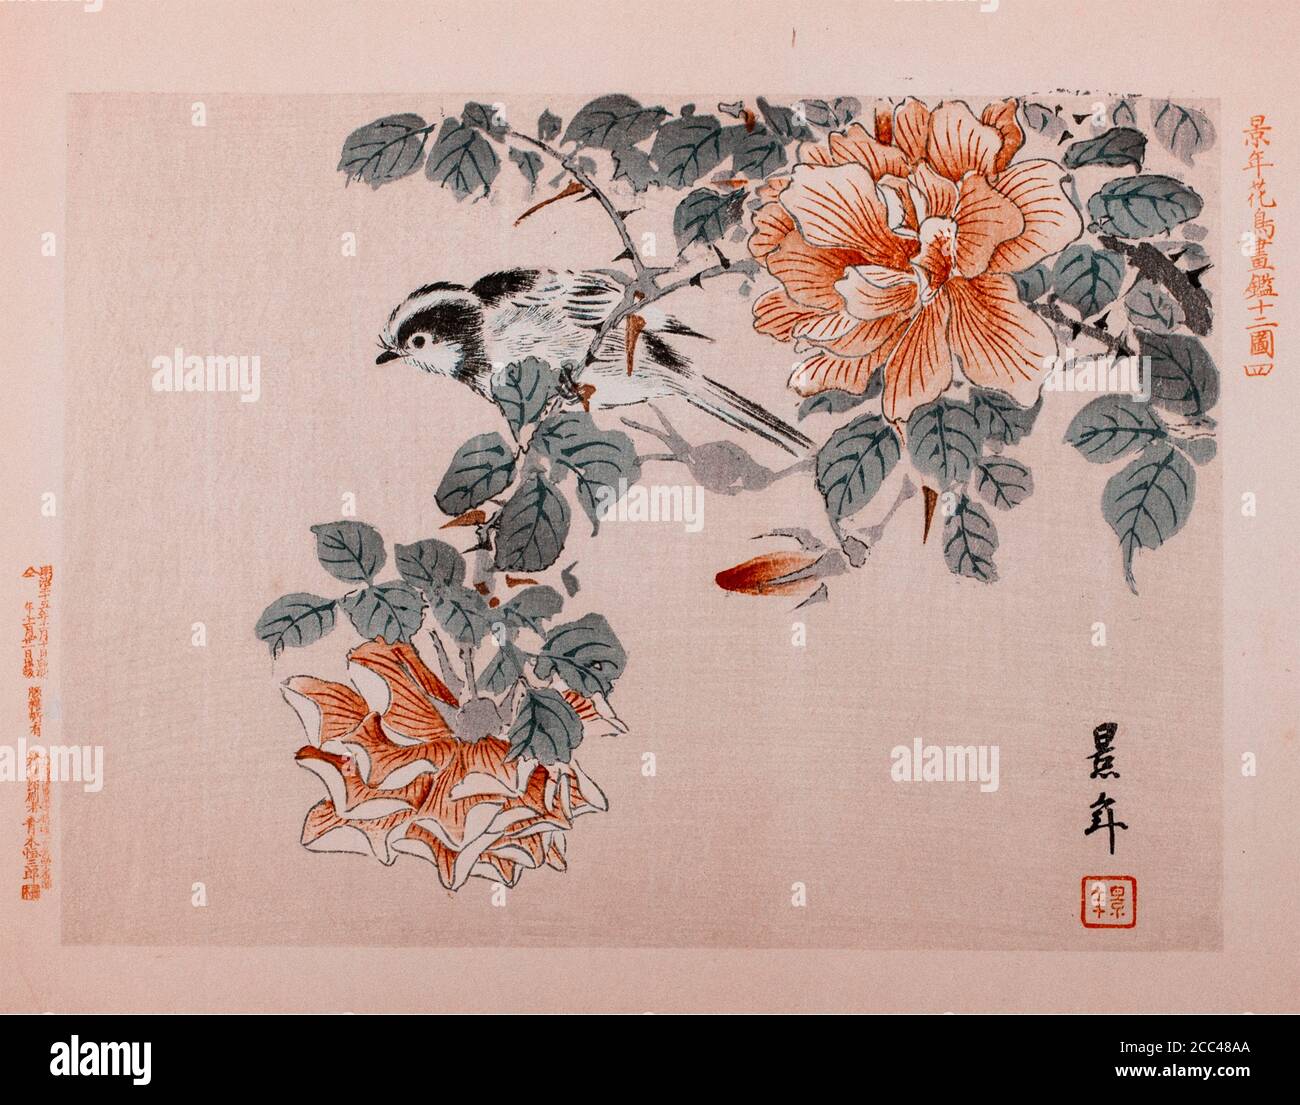 Imao keinen: Keinen Kacho Gafu (Four Seasons Bird and Flower Albums), Bird and Roses. Japan. 1892 Imao keinen (1845 – 1924) war ein japanischer Maler und Stockfoto